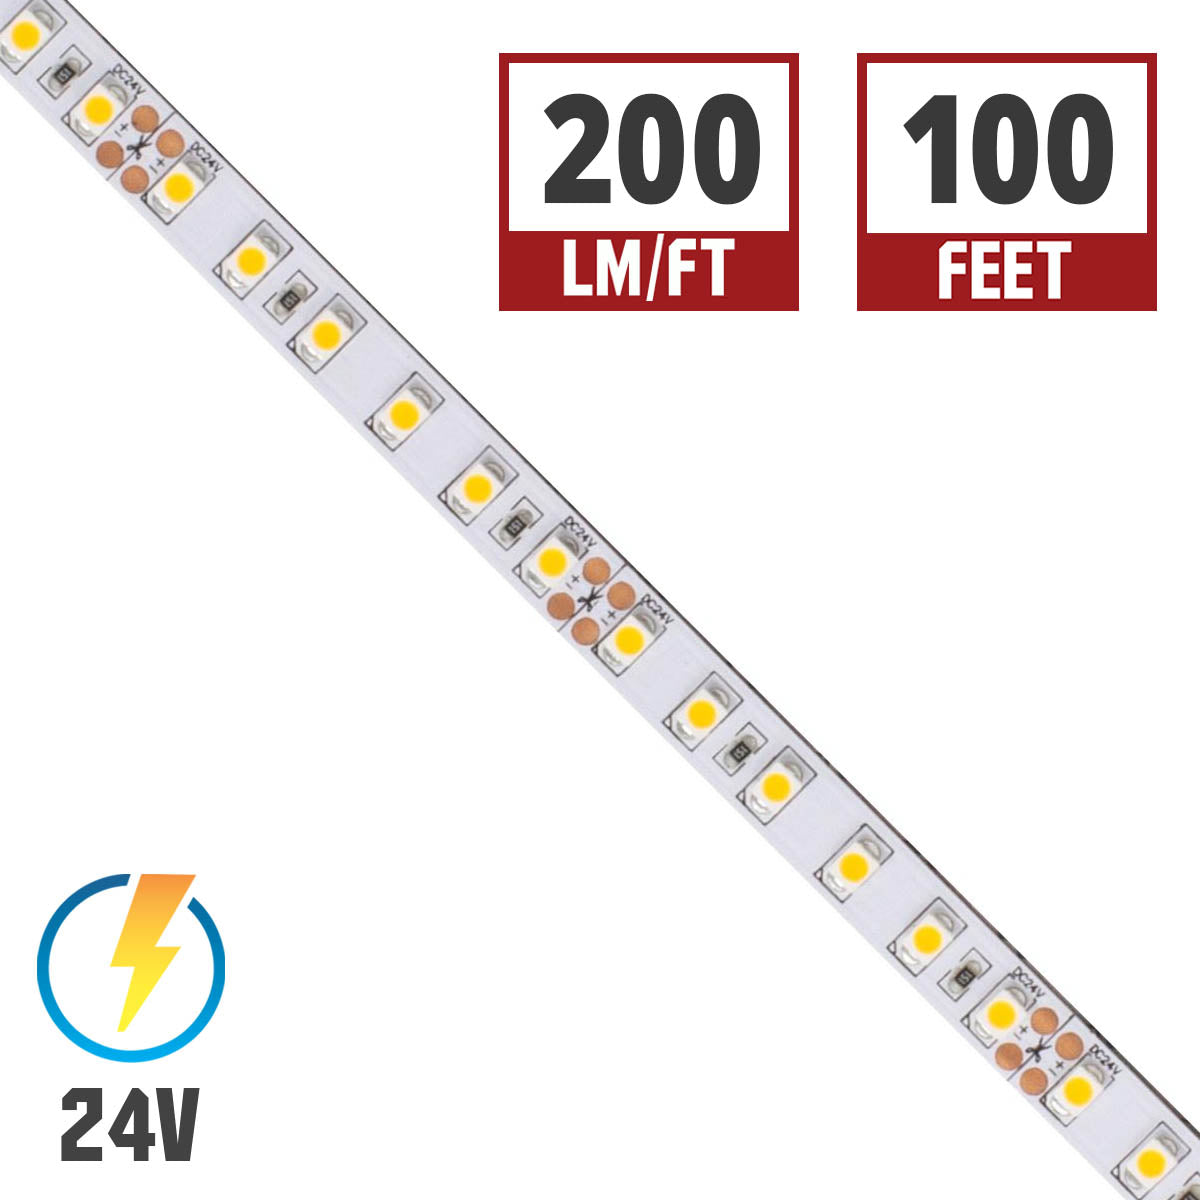 BLAZE LED Strip Light, 200+ Lumens per Ft, 24V